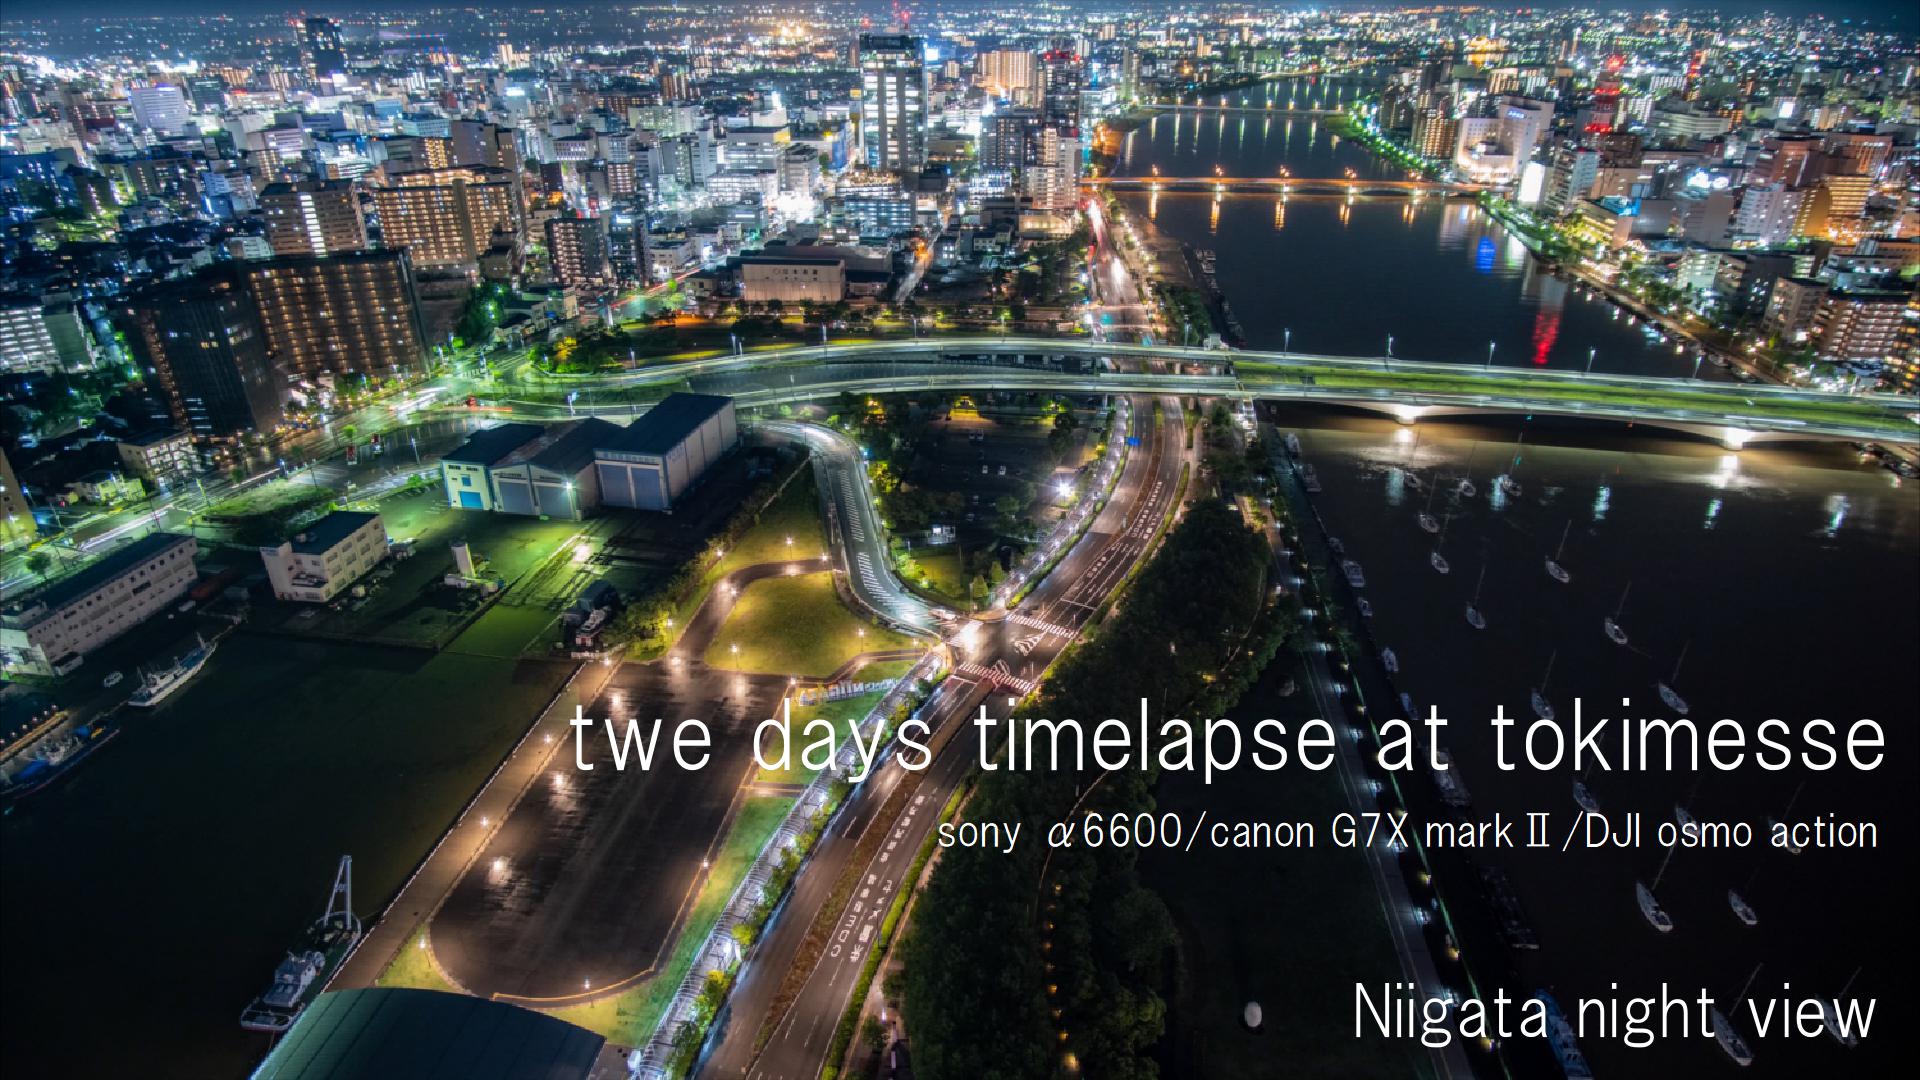 ソニー A6600で撮る 新潟夜景タイムラプス Two Days Timelapse At Tokimesse Niigata Sony A6600 Canon G7x Mark Dji Osmo Action Movie Vol 15 Smallworks